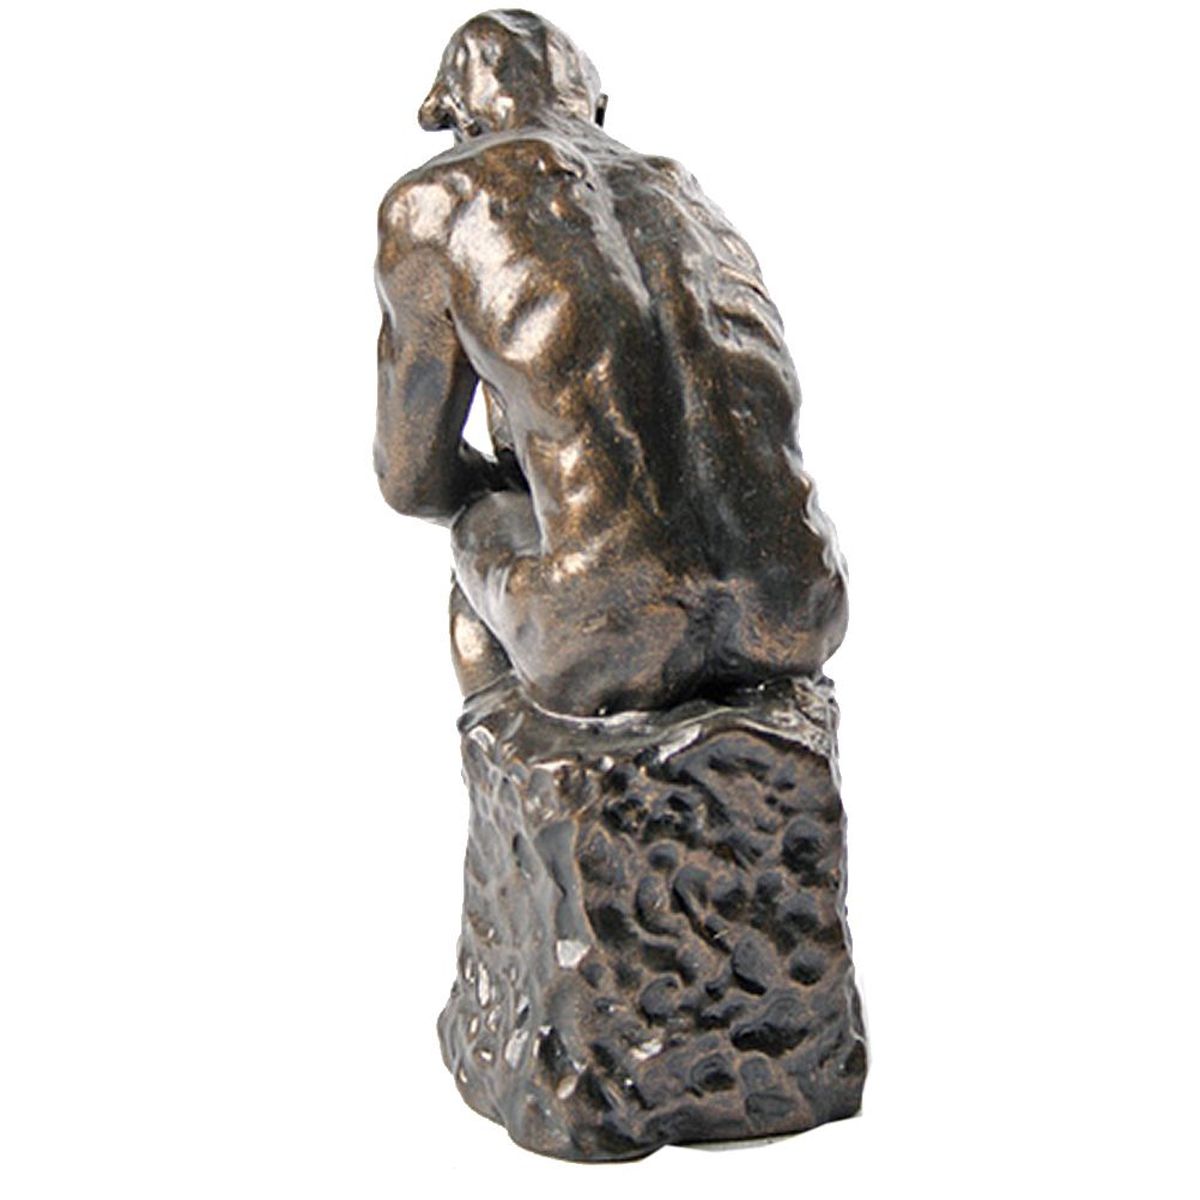 Reproduction du Penseur de Rodin - 15 cm